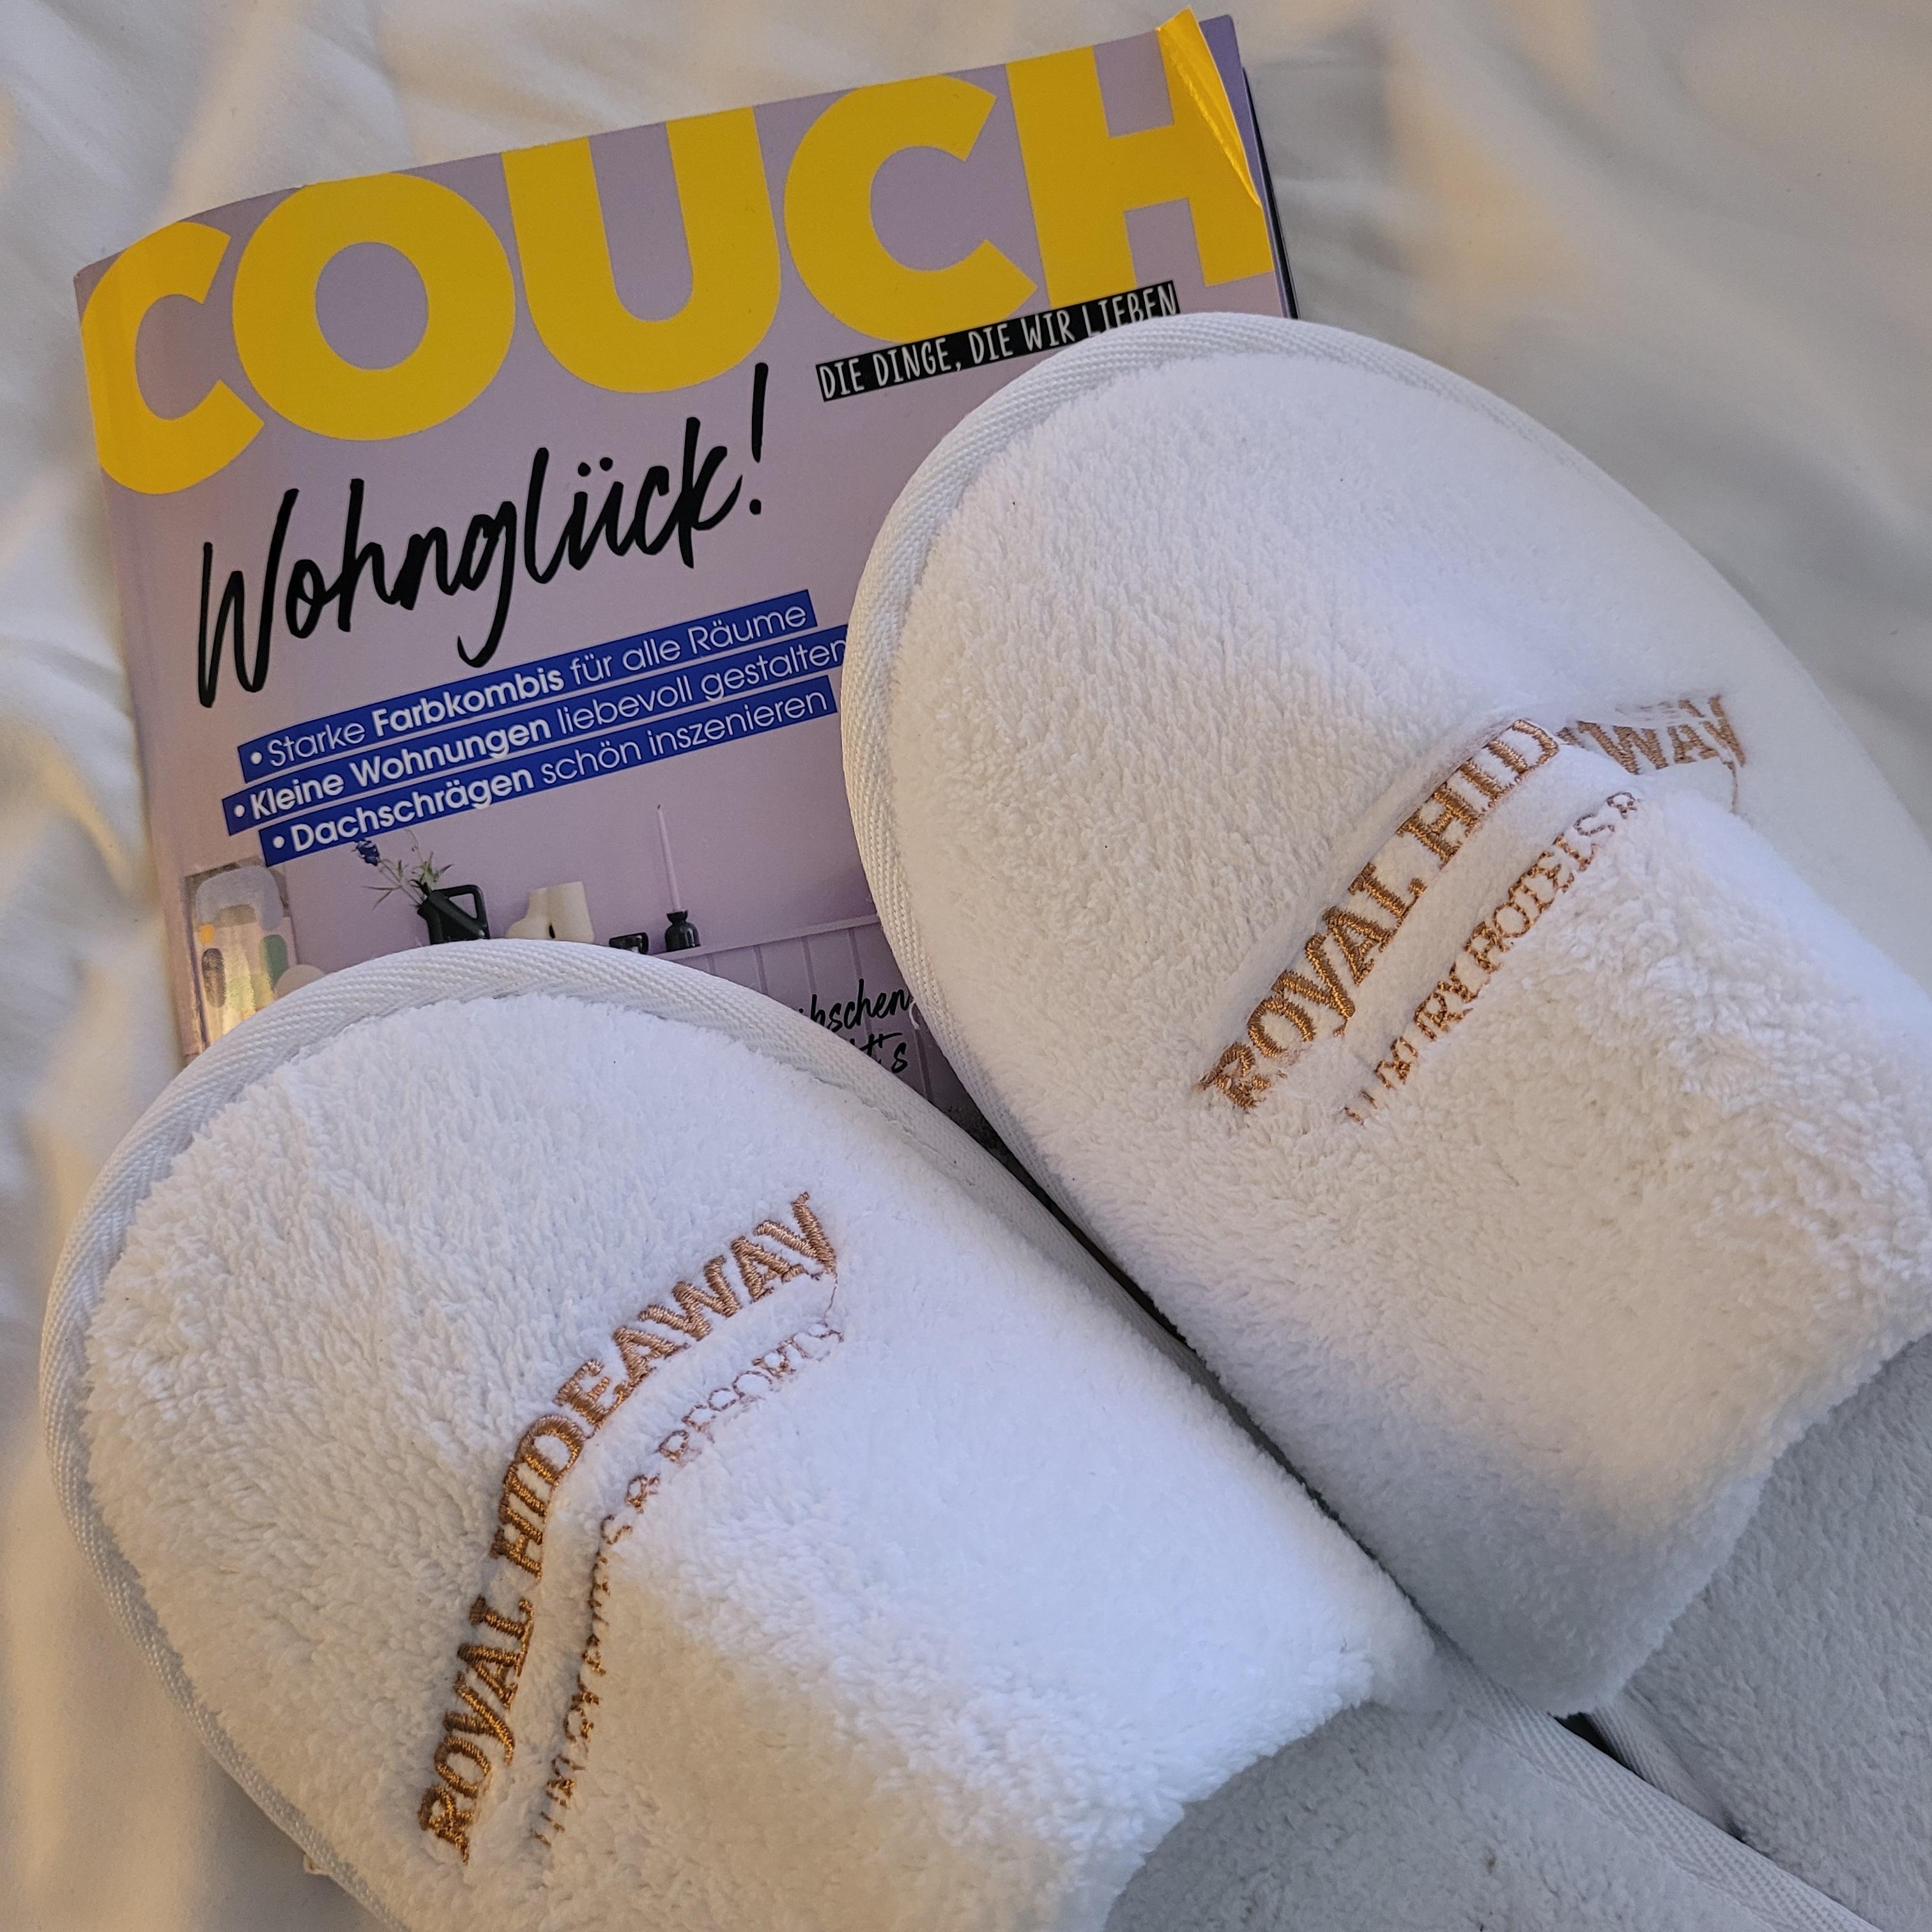 ♡ Danke dafür ♡

#Lieblingszeitung #couch #auszeit #Wellness #royalhideawaysanctipetri 